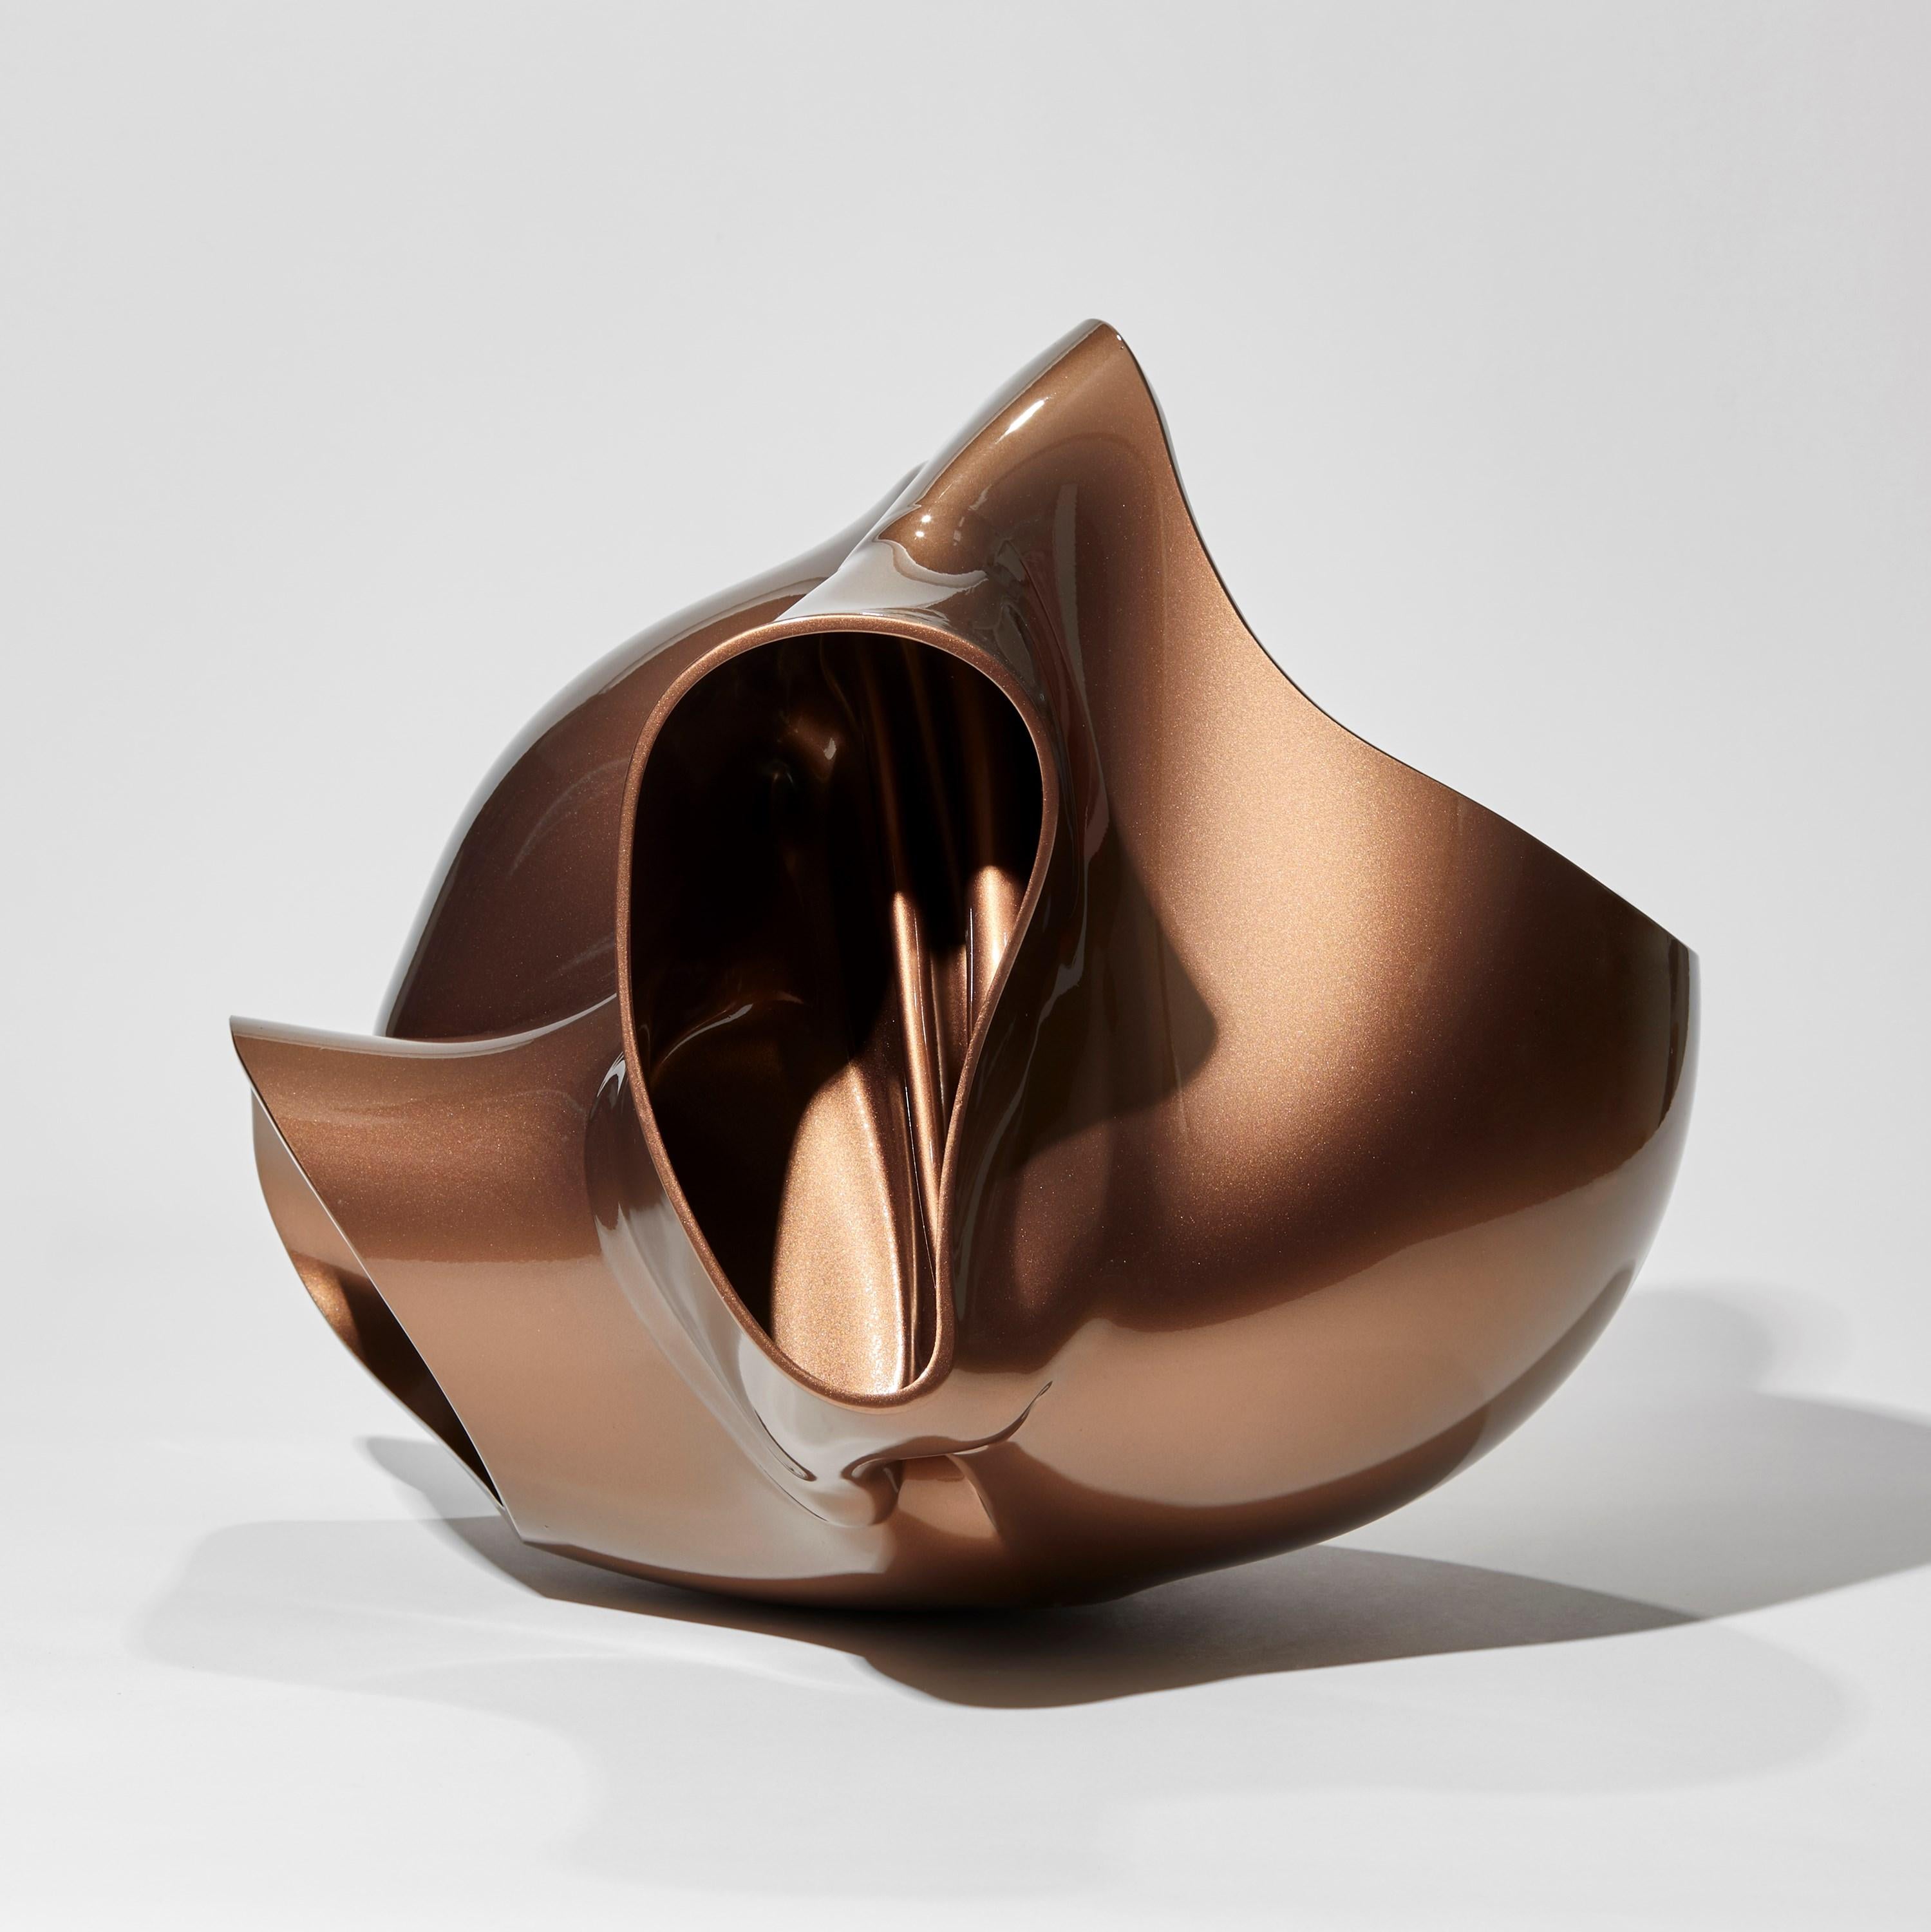 Organic Modern Heart Flower in Metallic Bronze, Abstract Glass Sculpture by Lena Bergström For Sale